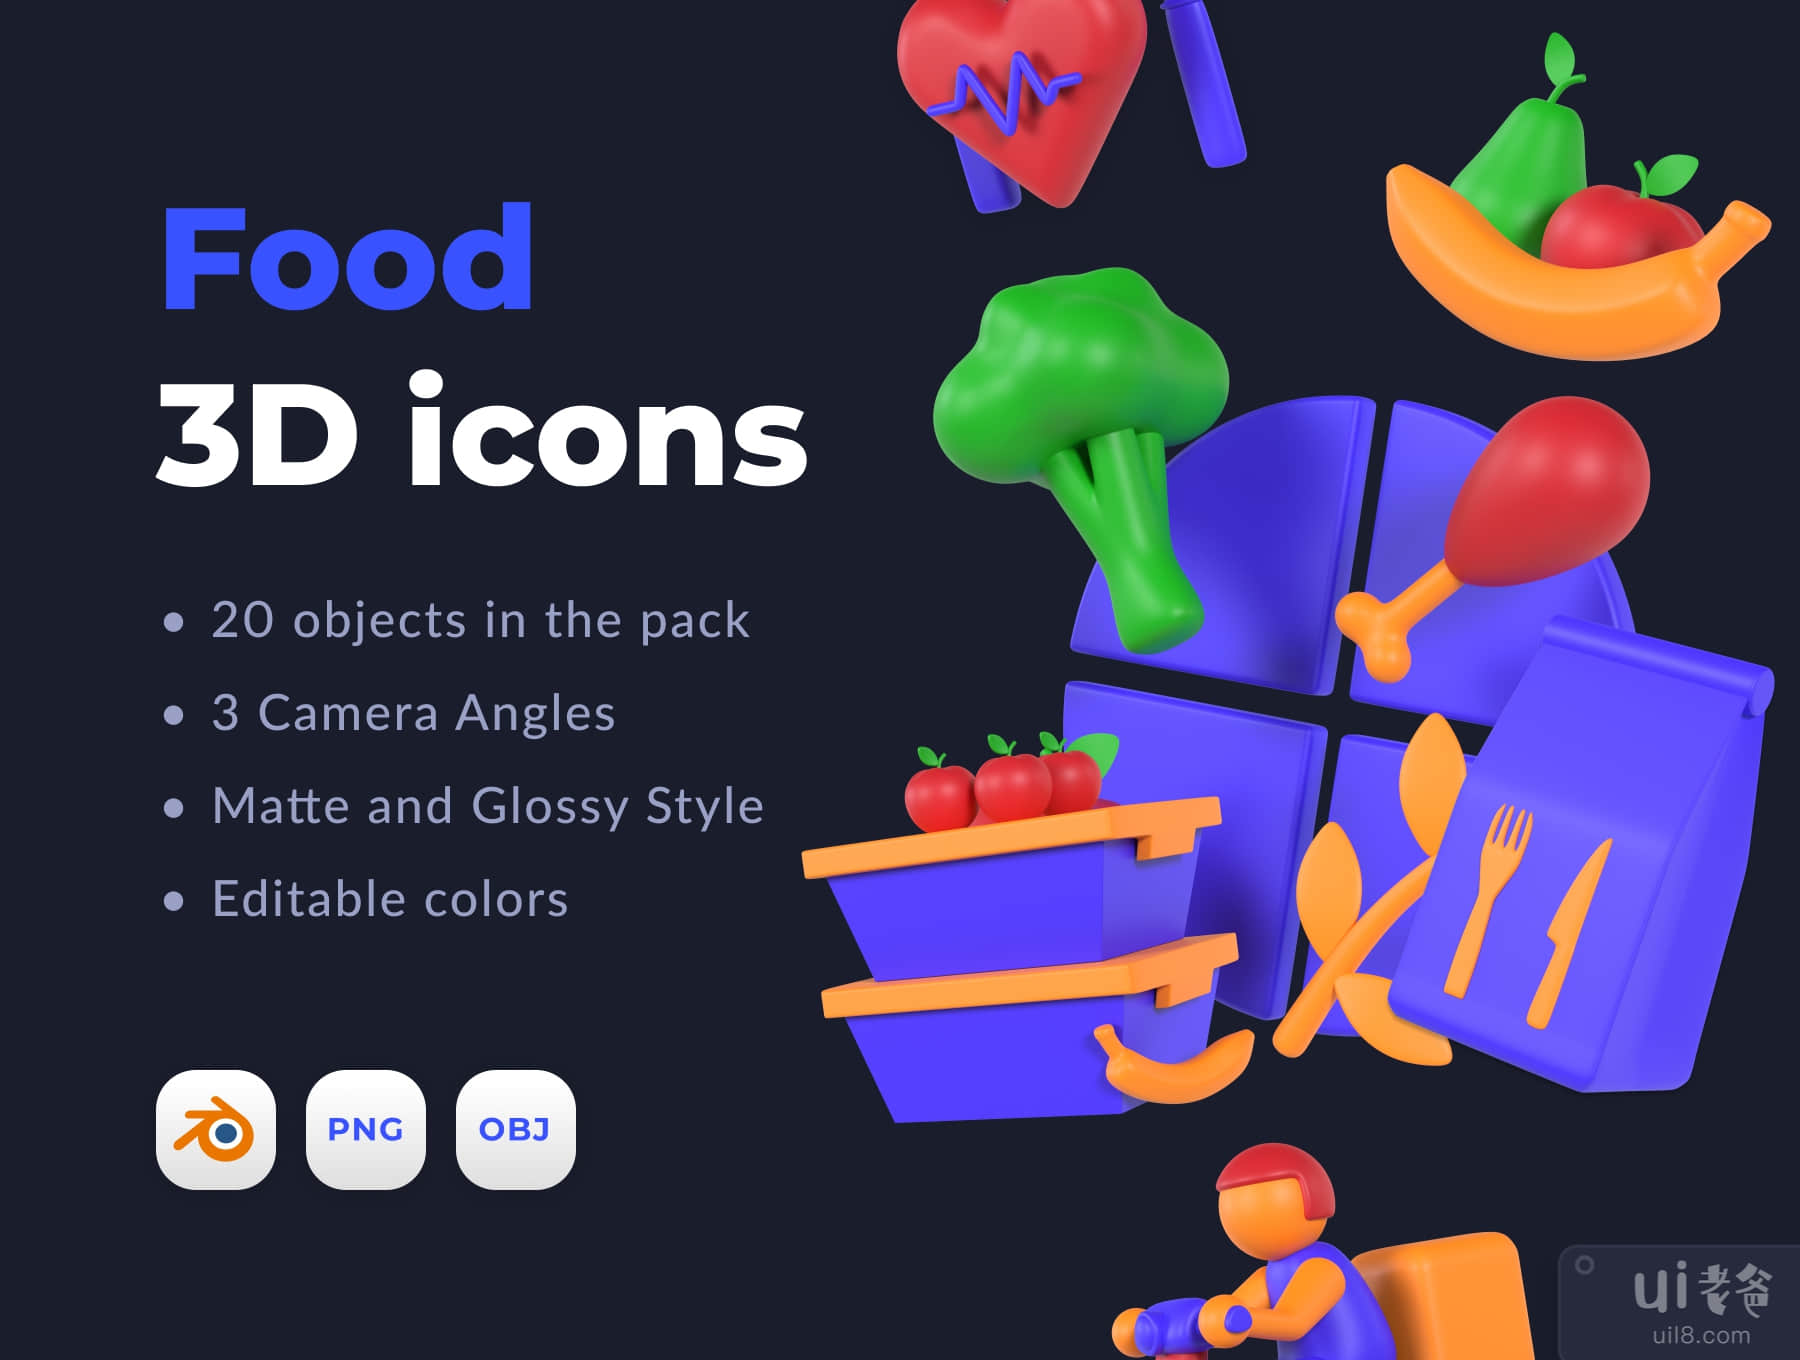 食品3D图标 (Food 3D icons)插图